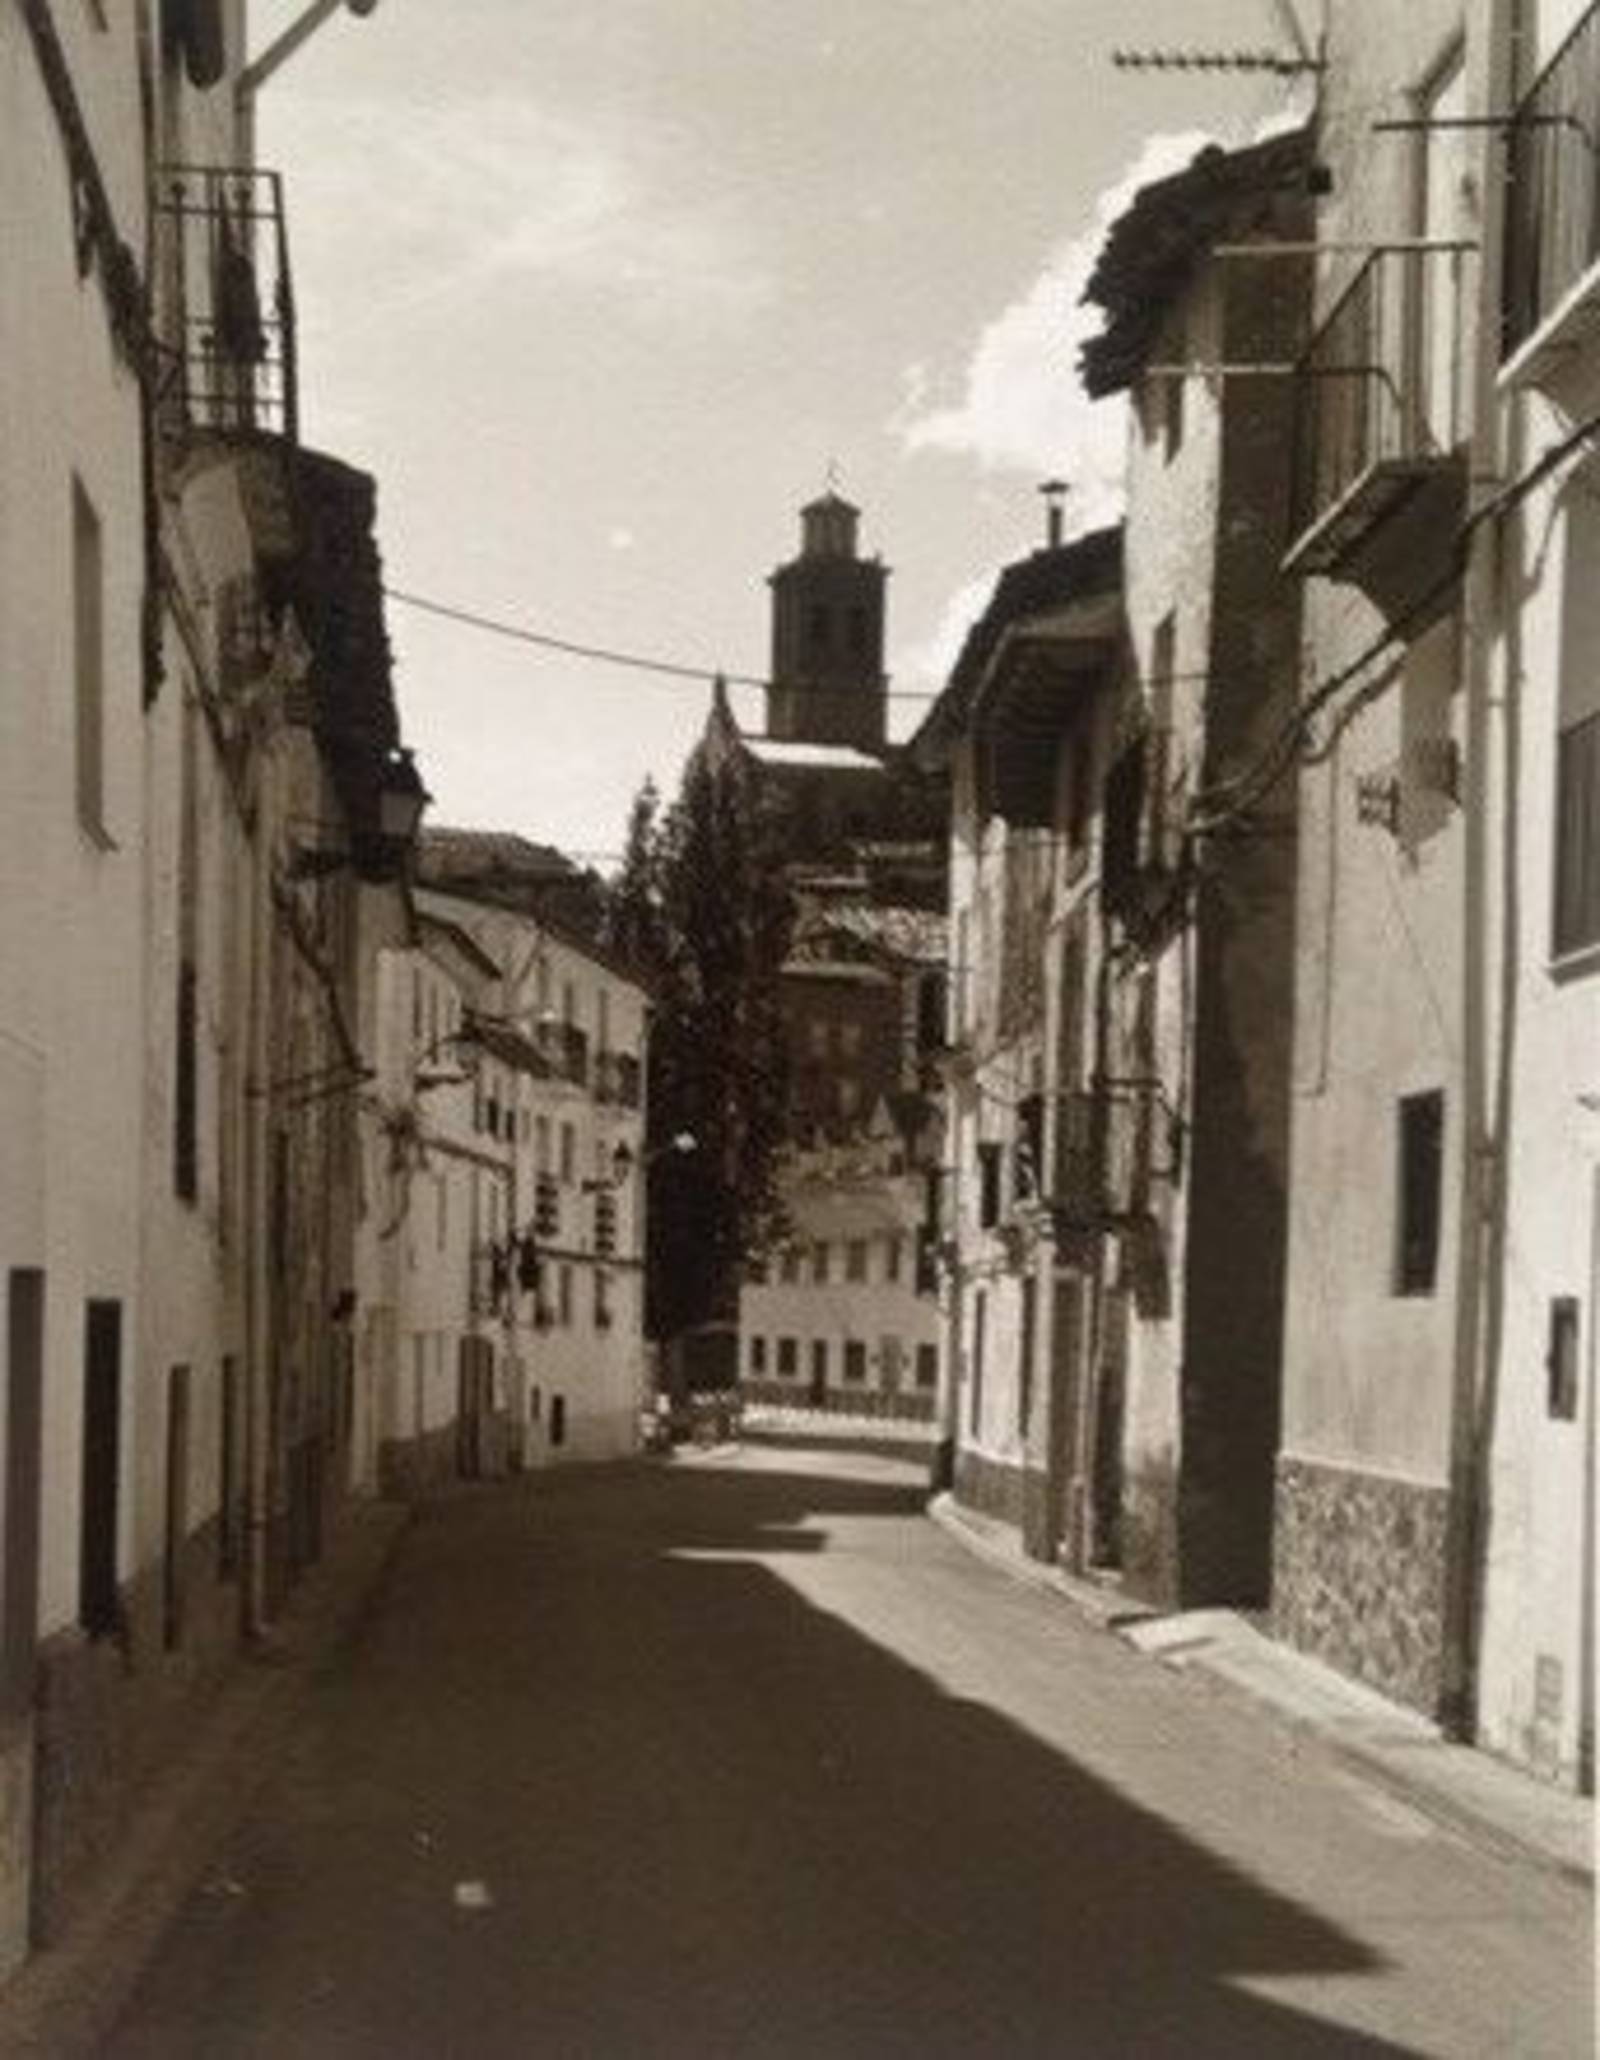 schwarz weiß Bild einer engen Straße durch Häuser